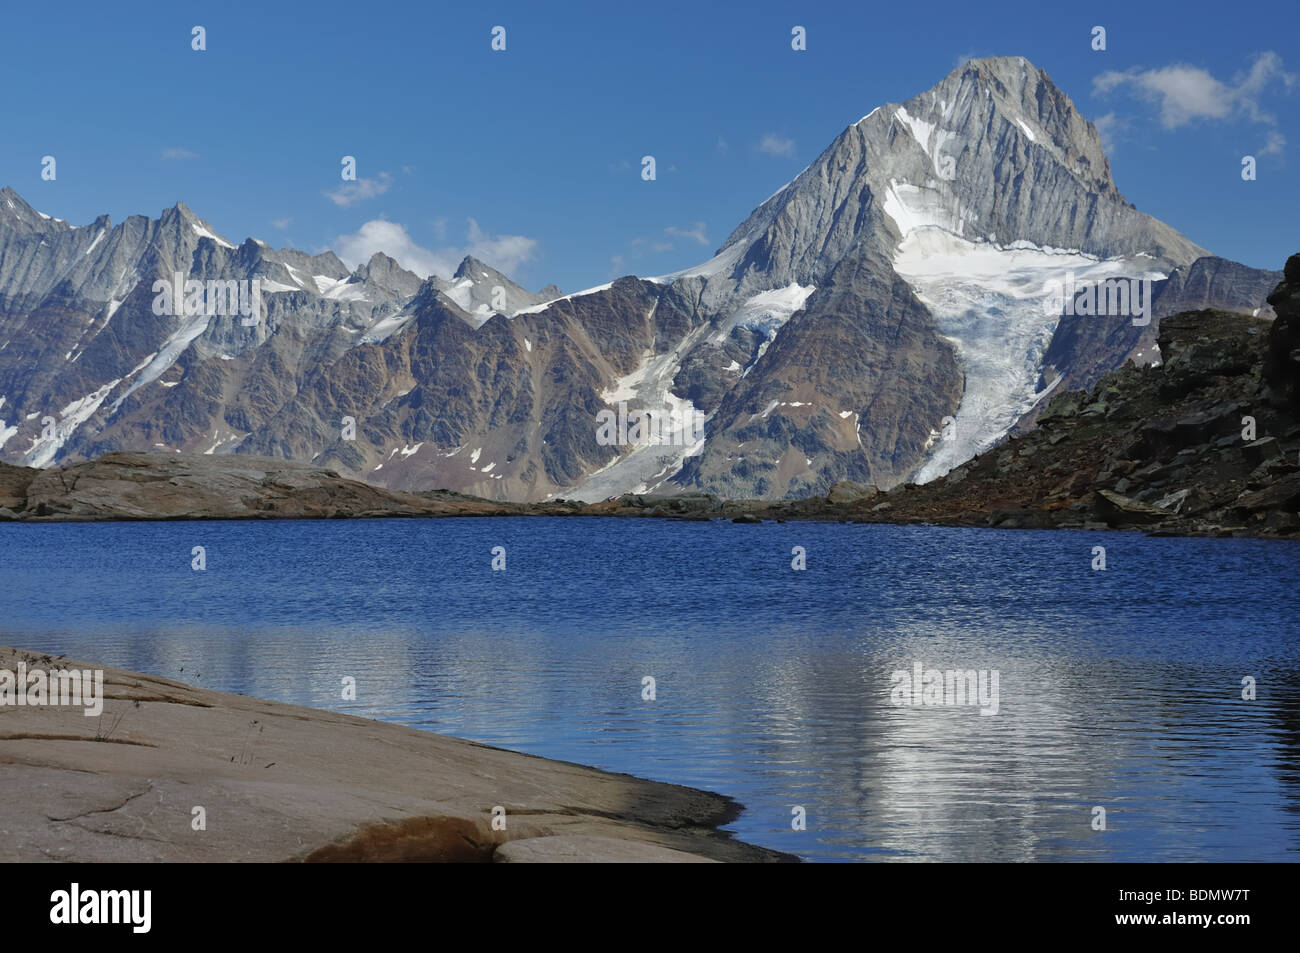 La réflexion d'une haute crête avec glacier dans un lac de montagne Banque D'Images